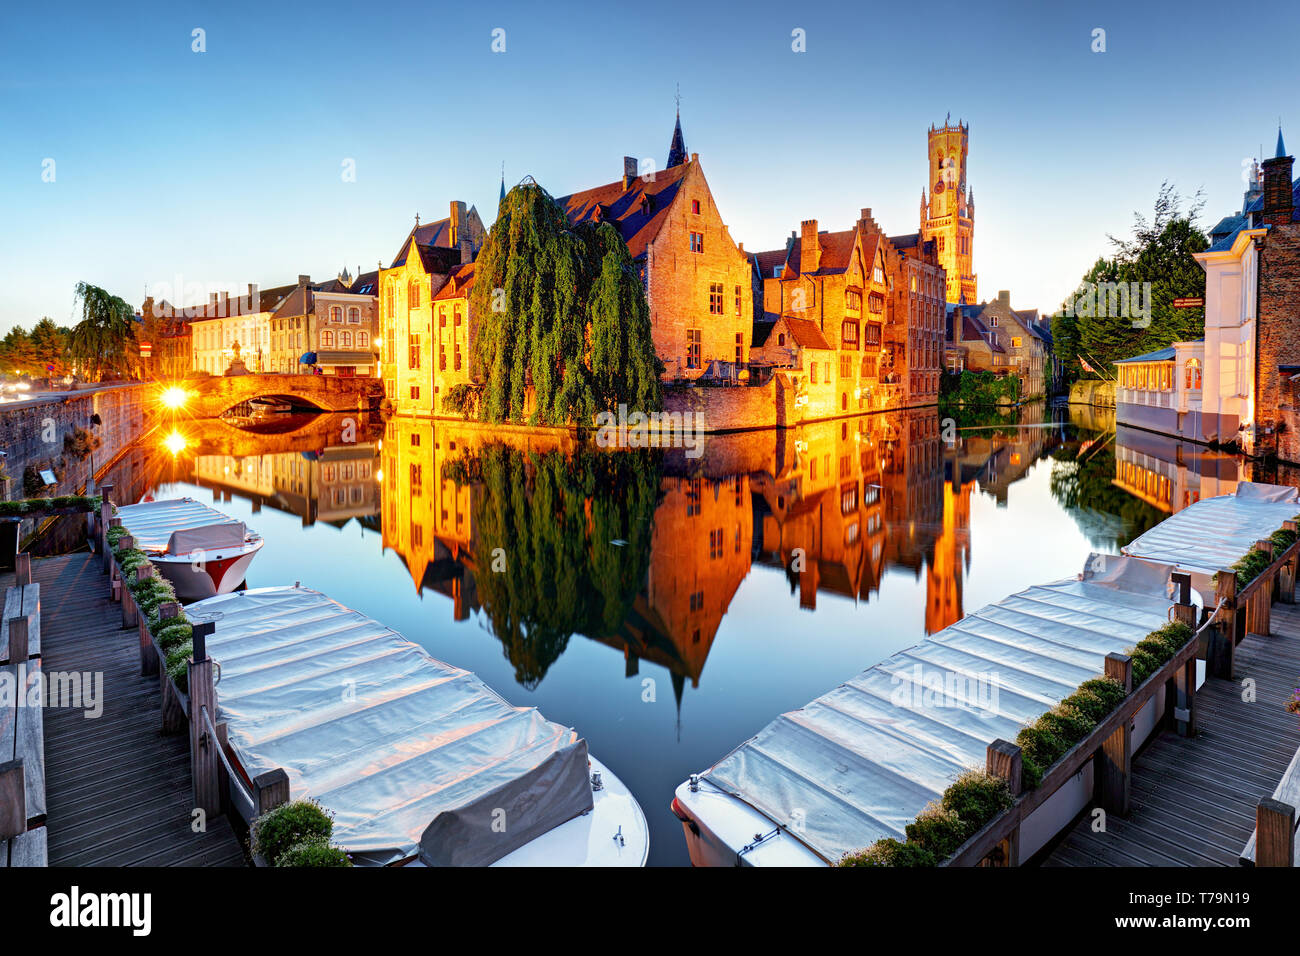 Bruges - tradizionali canali della città nel centro storico medievale. Belgio Foto Stock